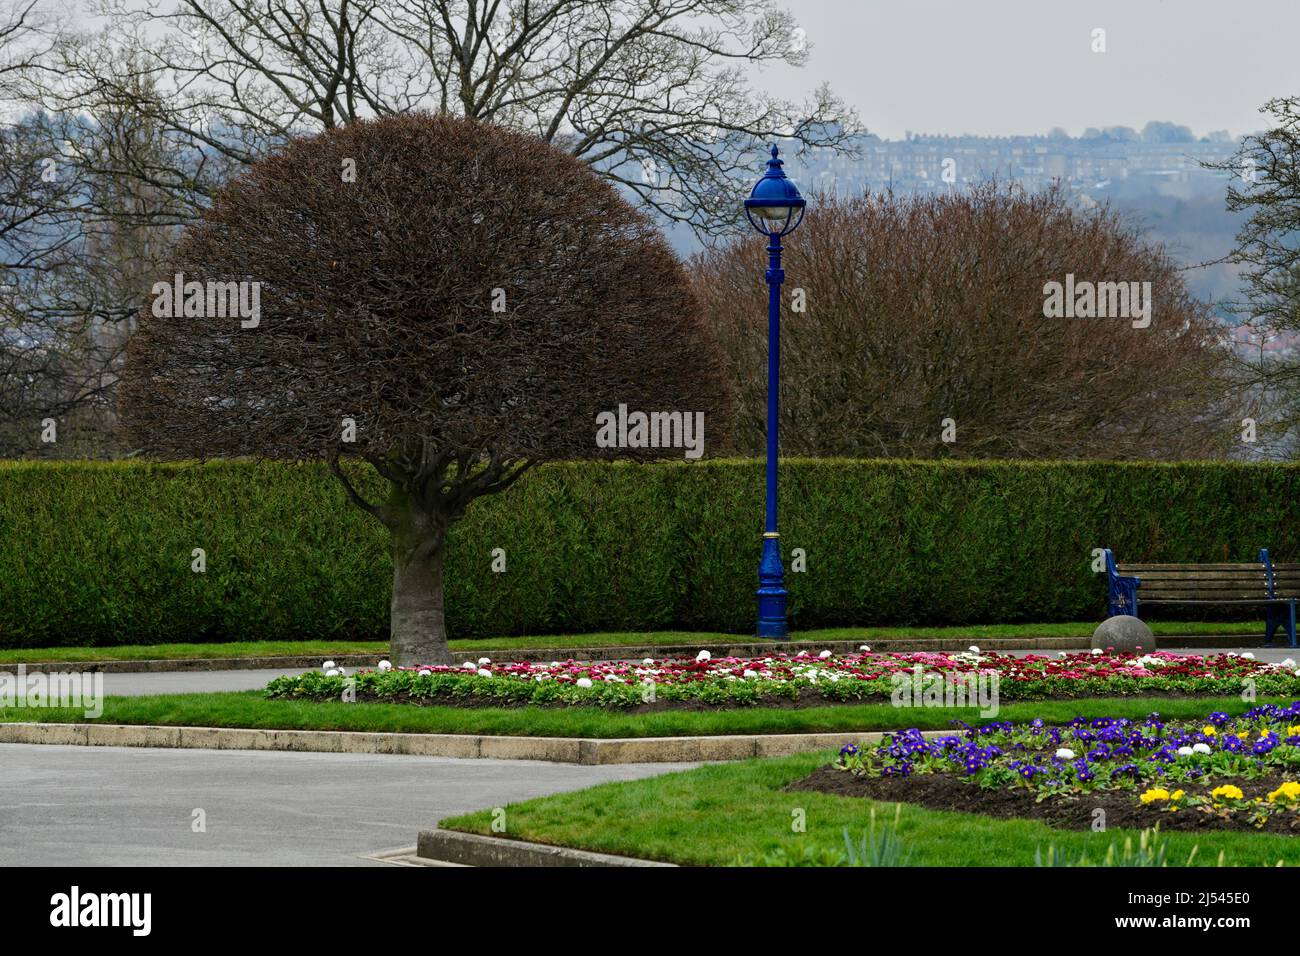 Servicio municipal urbano escénico (brillantes flores de ropa de cama en bien tendidos bordes definidos, caminos, asiento de banco) - Lister Park, Bradford, Inglaterra, Reino Unido. Foto de stock